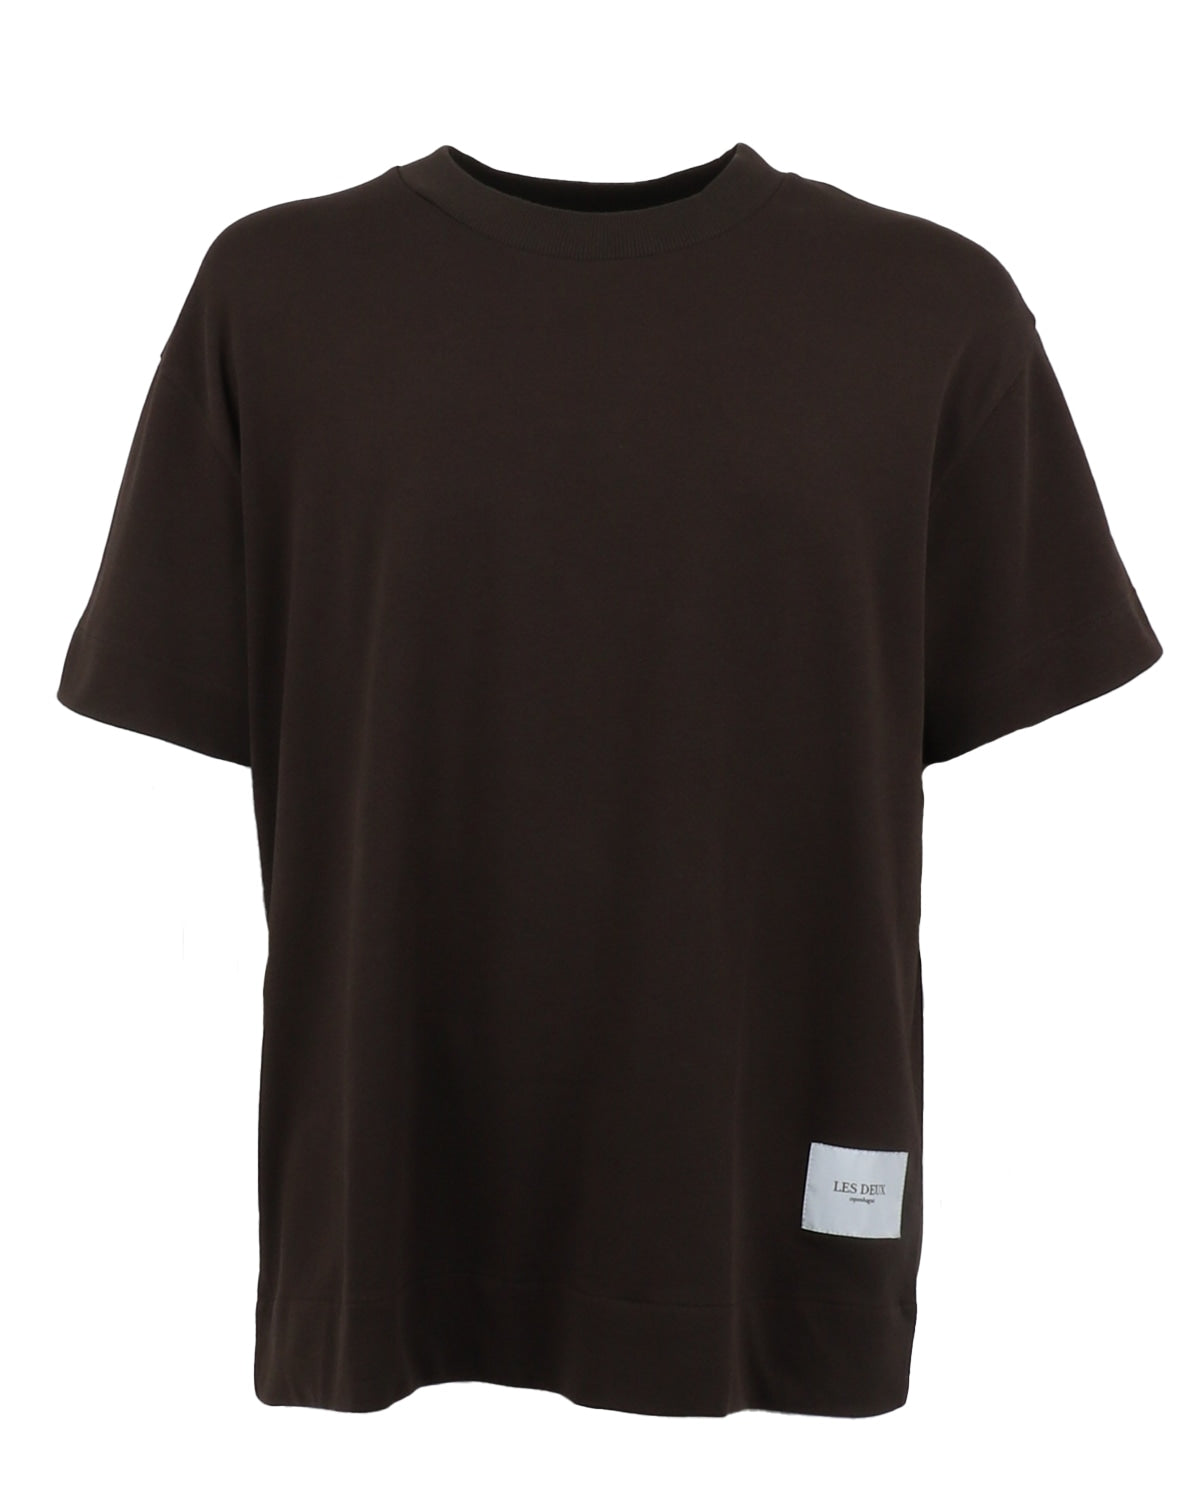 les deux_carl t-shirt 2.0_coffee brown_1_3